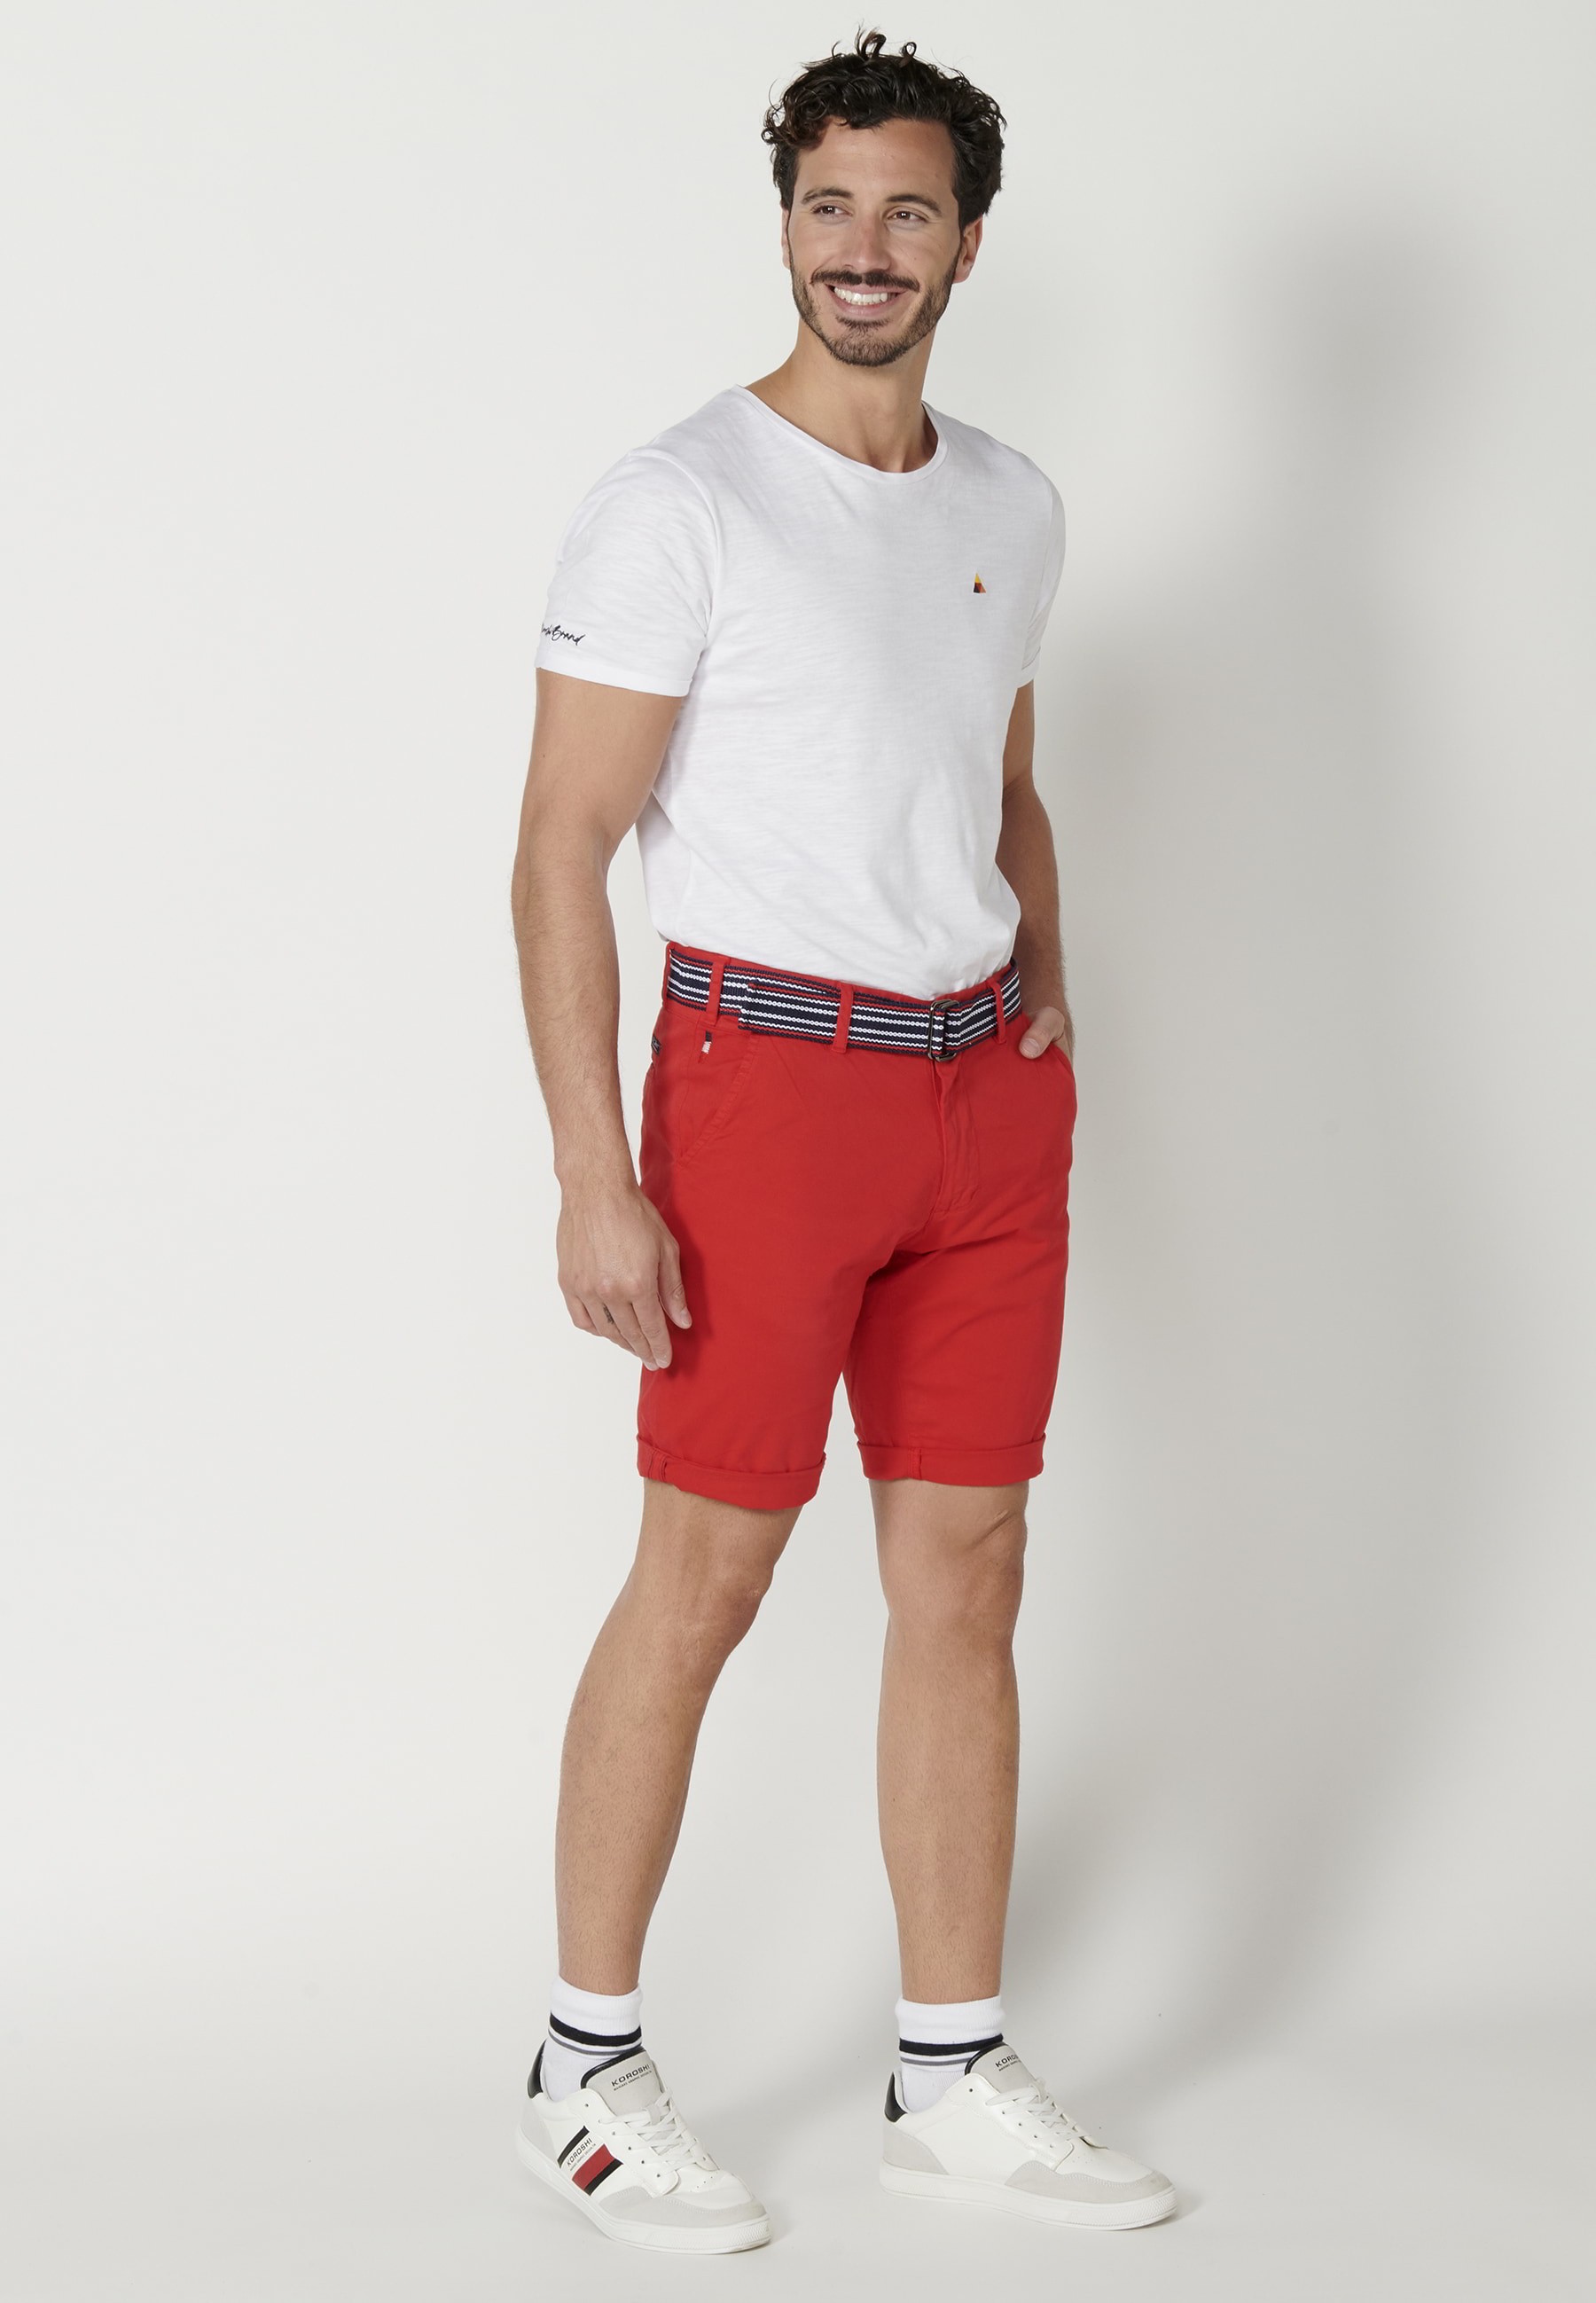 Pantalón corto Bermuda estilo Chino color Rojo para Hombre